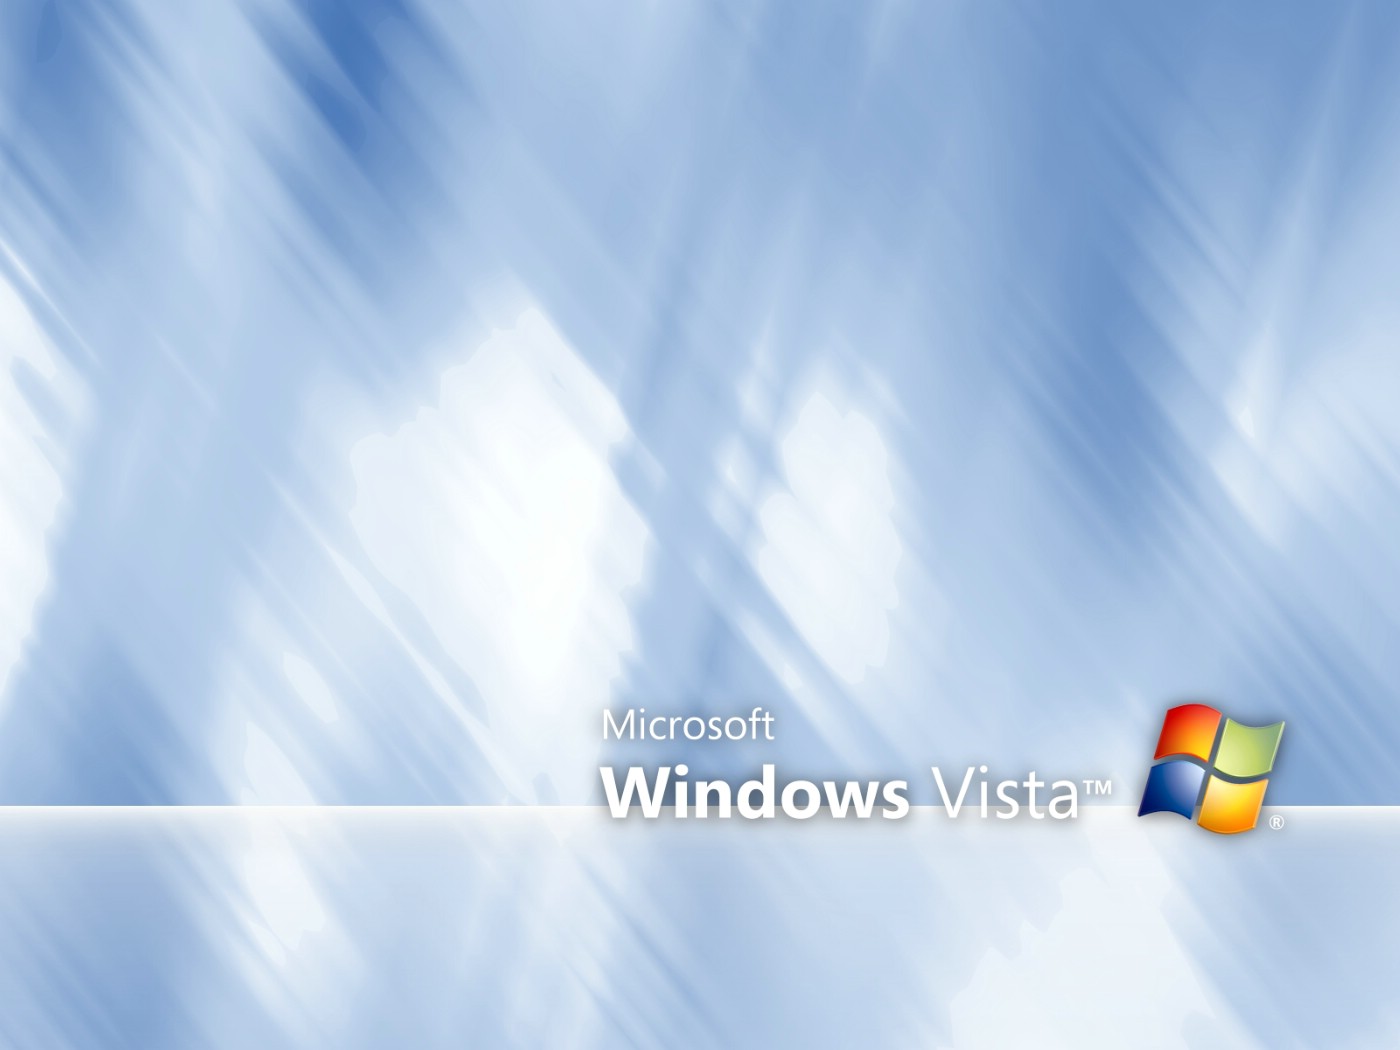 壁纸1400x1050超高分辨率Windows Vista简约壁纸壁纸 超高分辨率Windows Vista简约壁纸壁纸 超高分辨率Windows Vista简约壁纸图片 超高分辨率Windows Vista简约壁纸素材 创意壁纸 创意图库 创意图片素材桌面壁纸